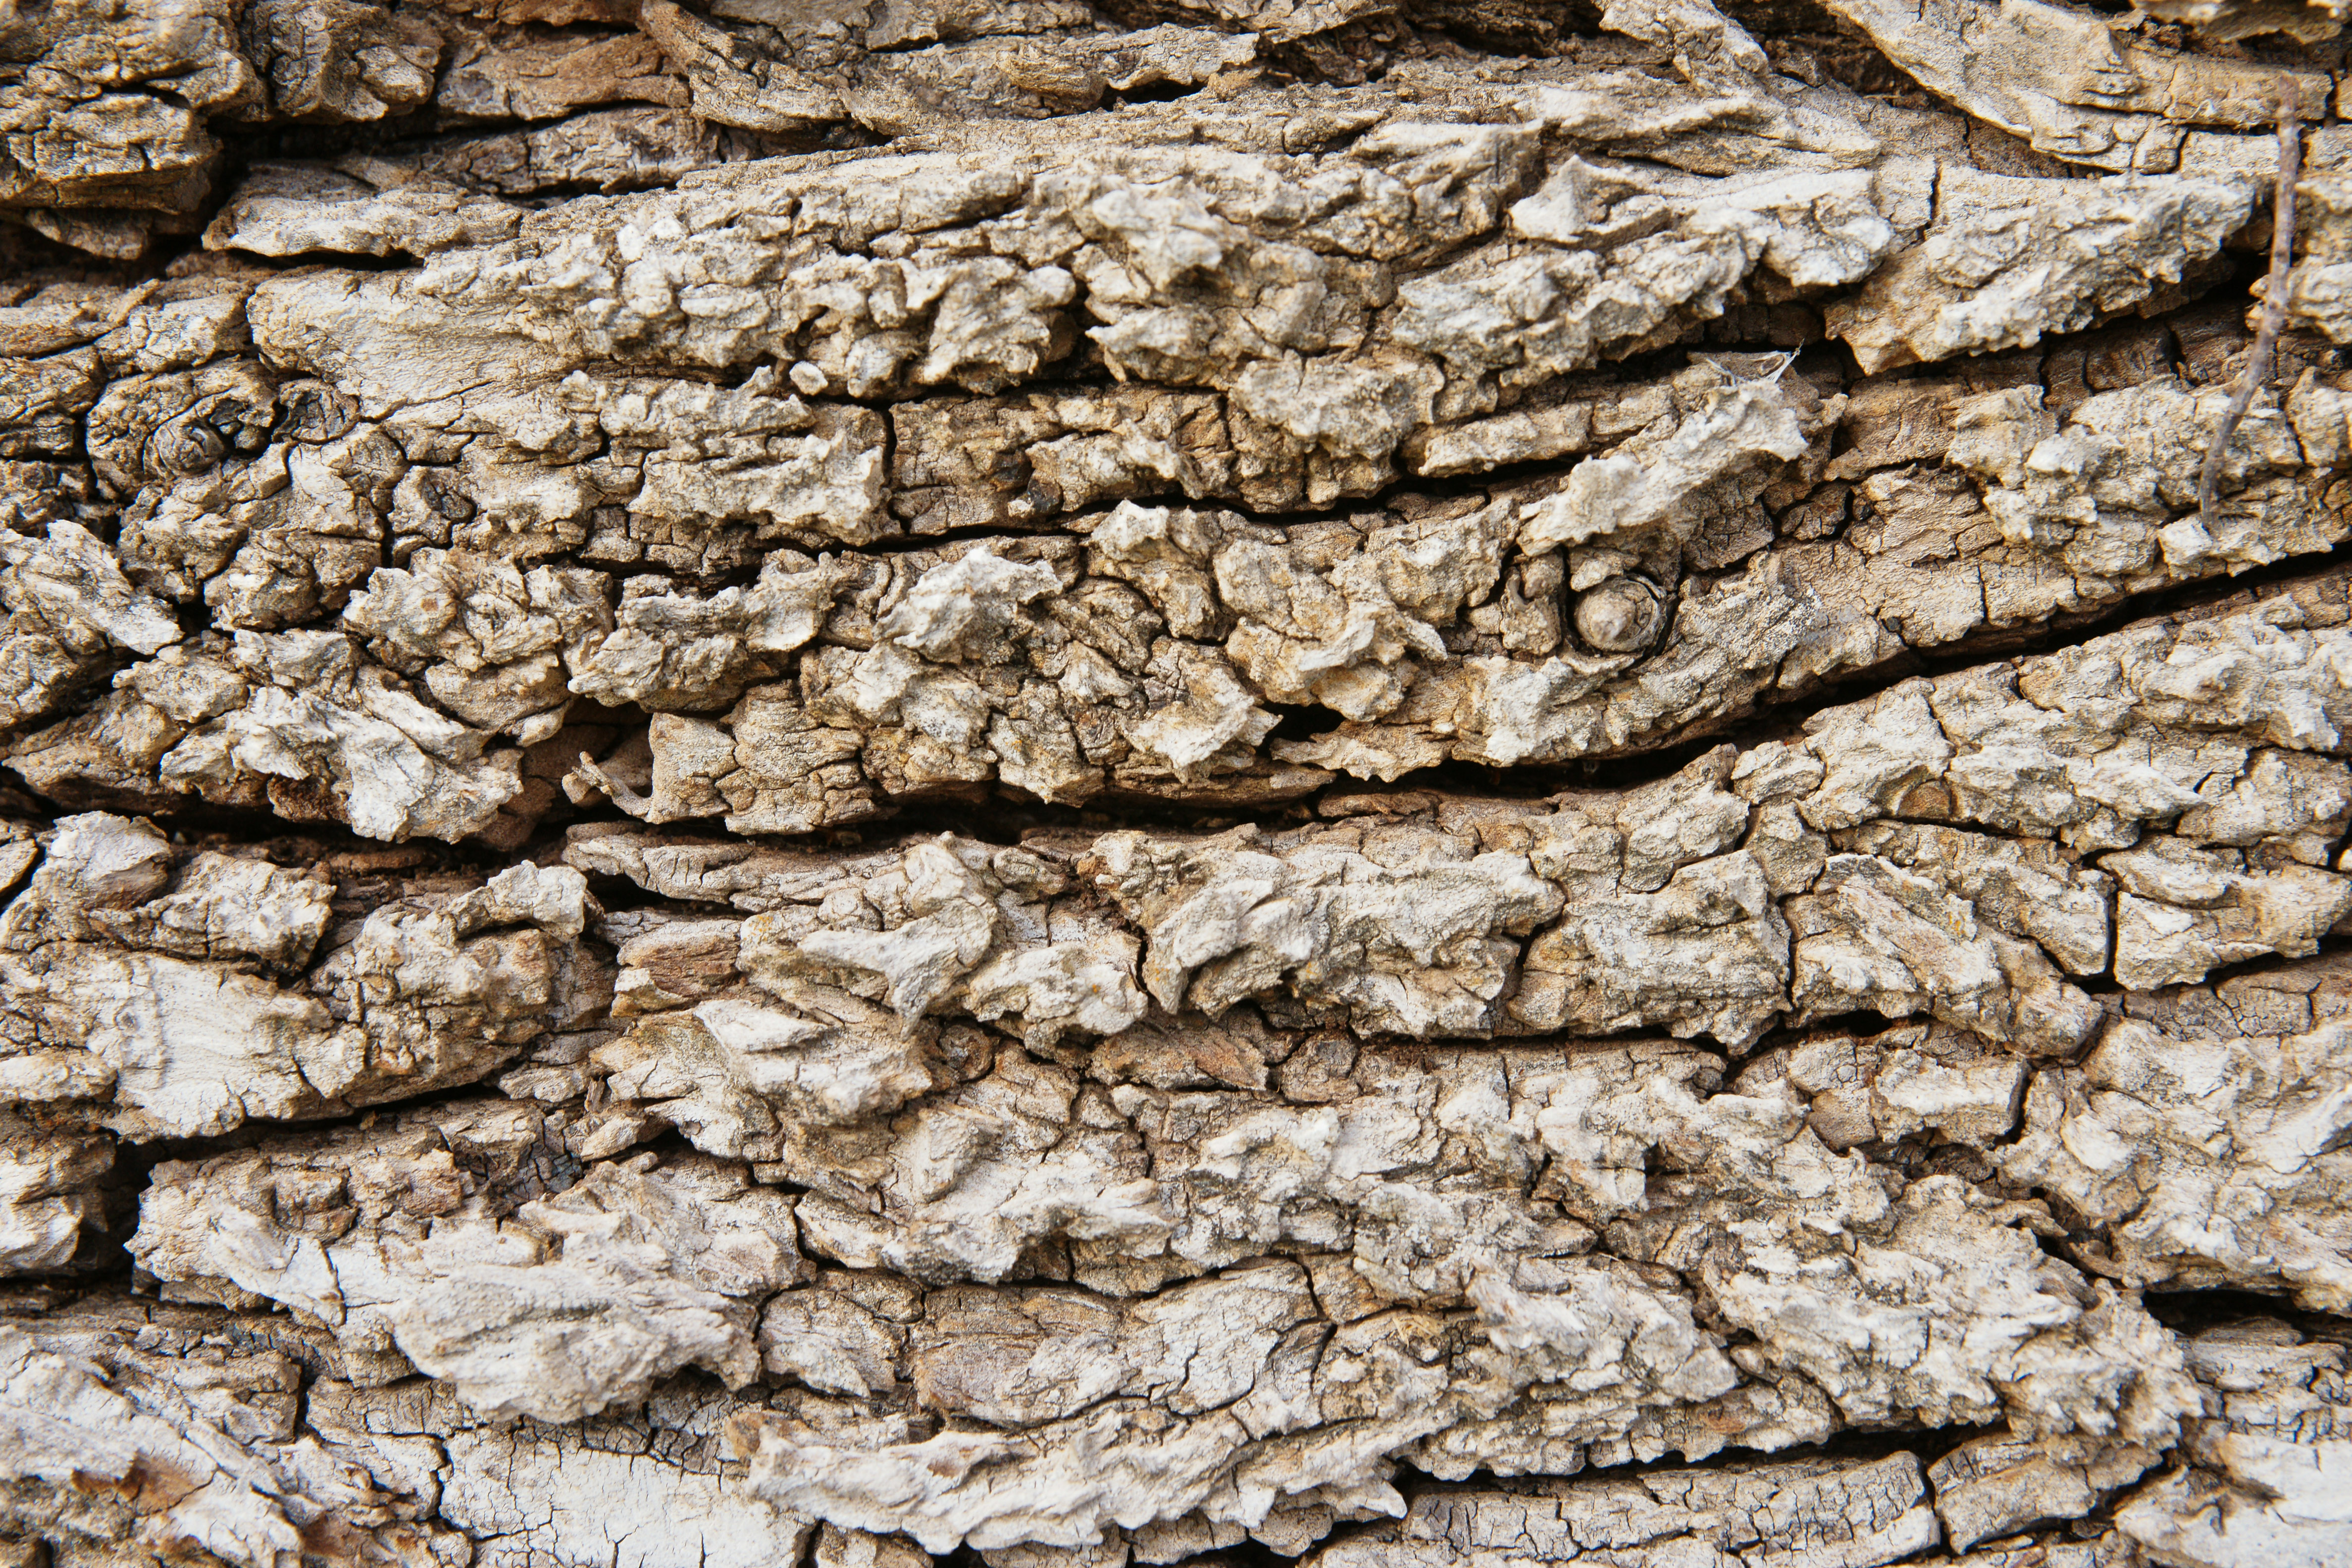 Vỏ cây gỗ thô mang đến sự mạnh mẽ và chắc chắn. Hình ảnh của vỏ cây gỗ thô được chụp bởi phóng viên chuyên nghiệp, giúp bạn thấy được sắc độc đáo và đẹp mắt của nó.